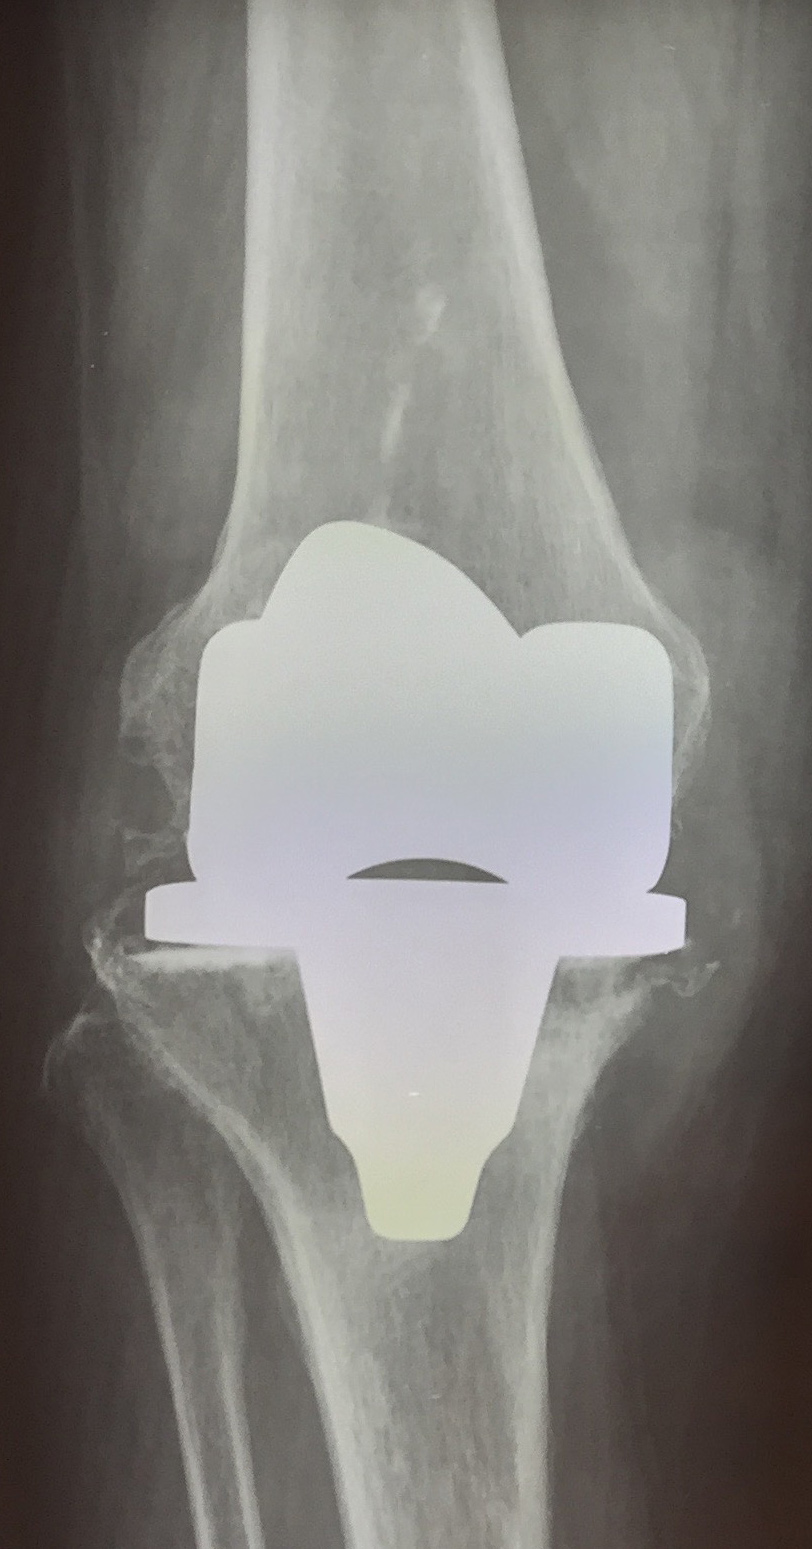 01 radiografia pre operatoria mobilizzazione della protesi